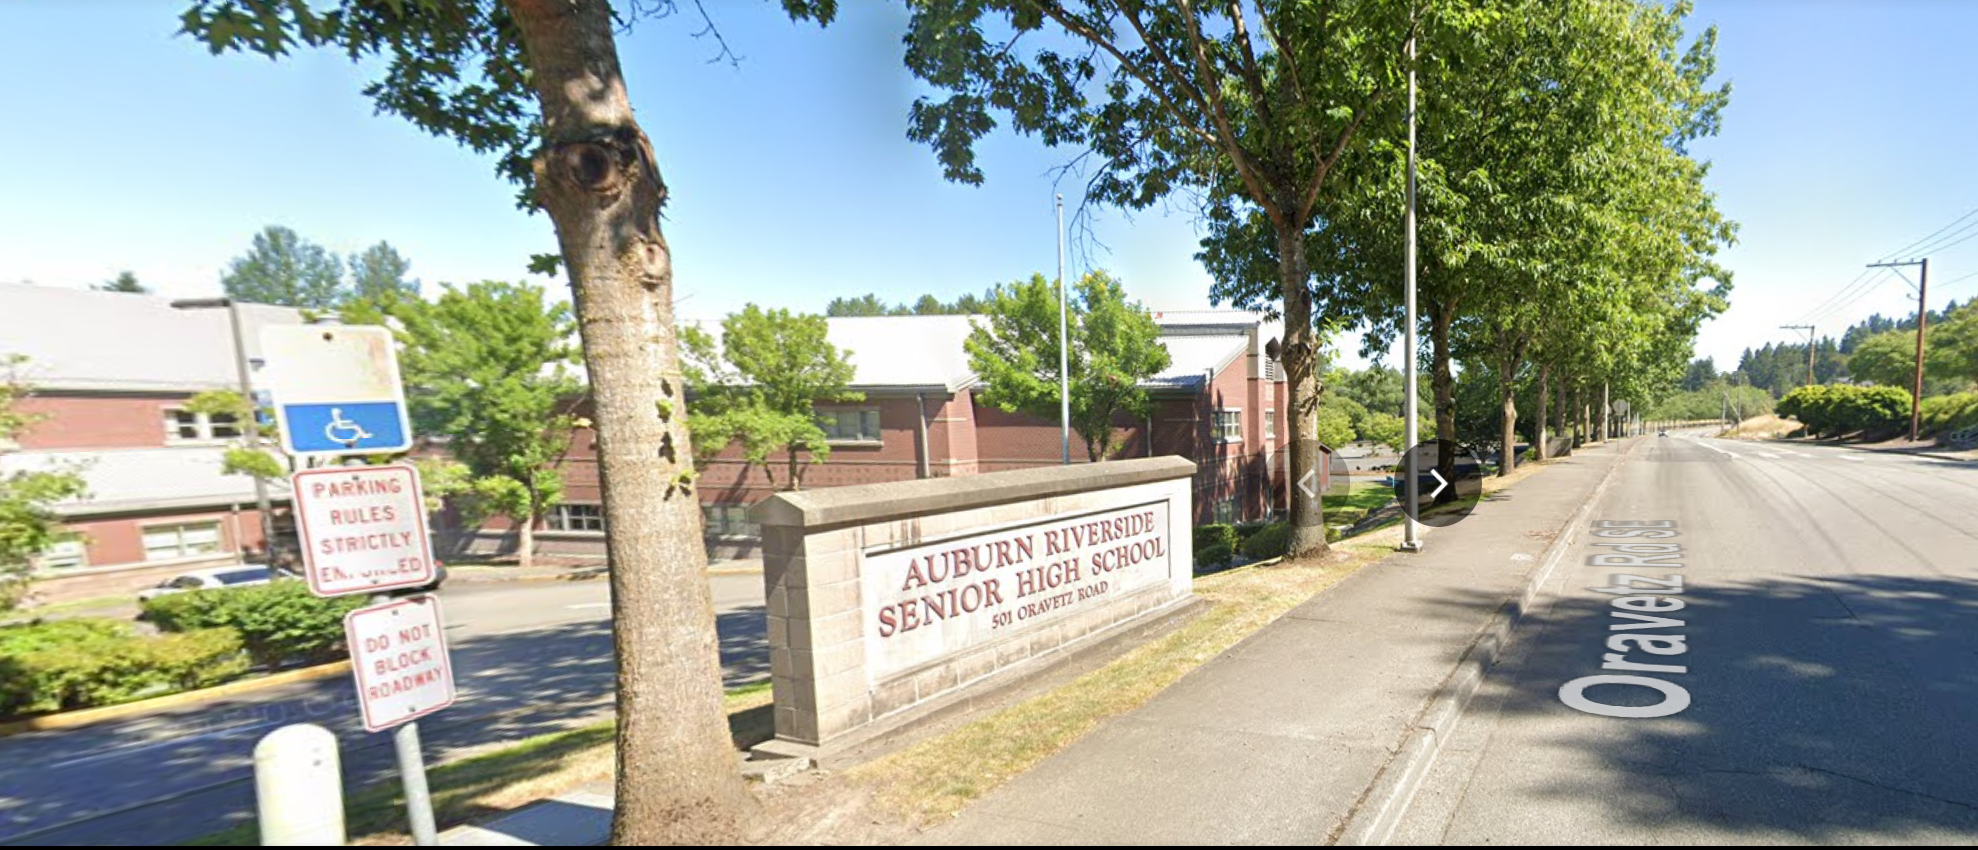 Five masked people entered a side door of Auburn Riverside High School earlier this week